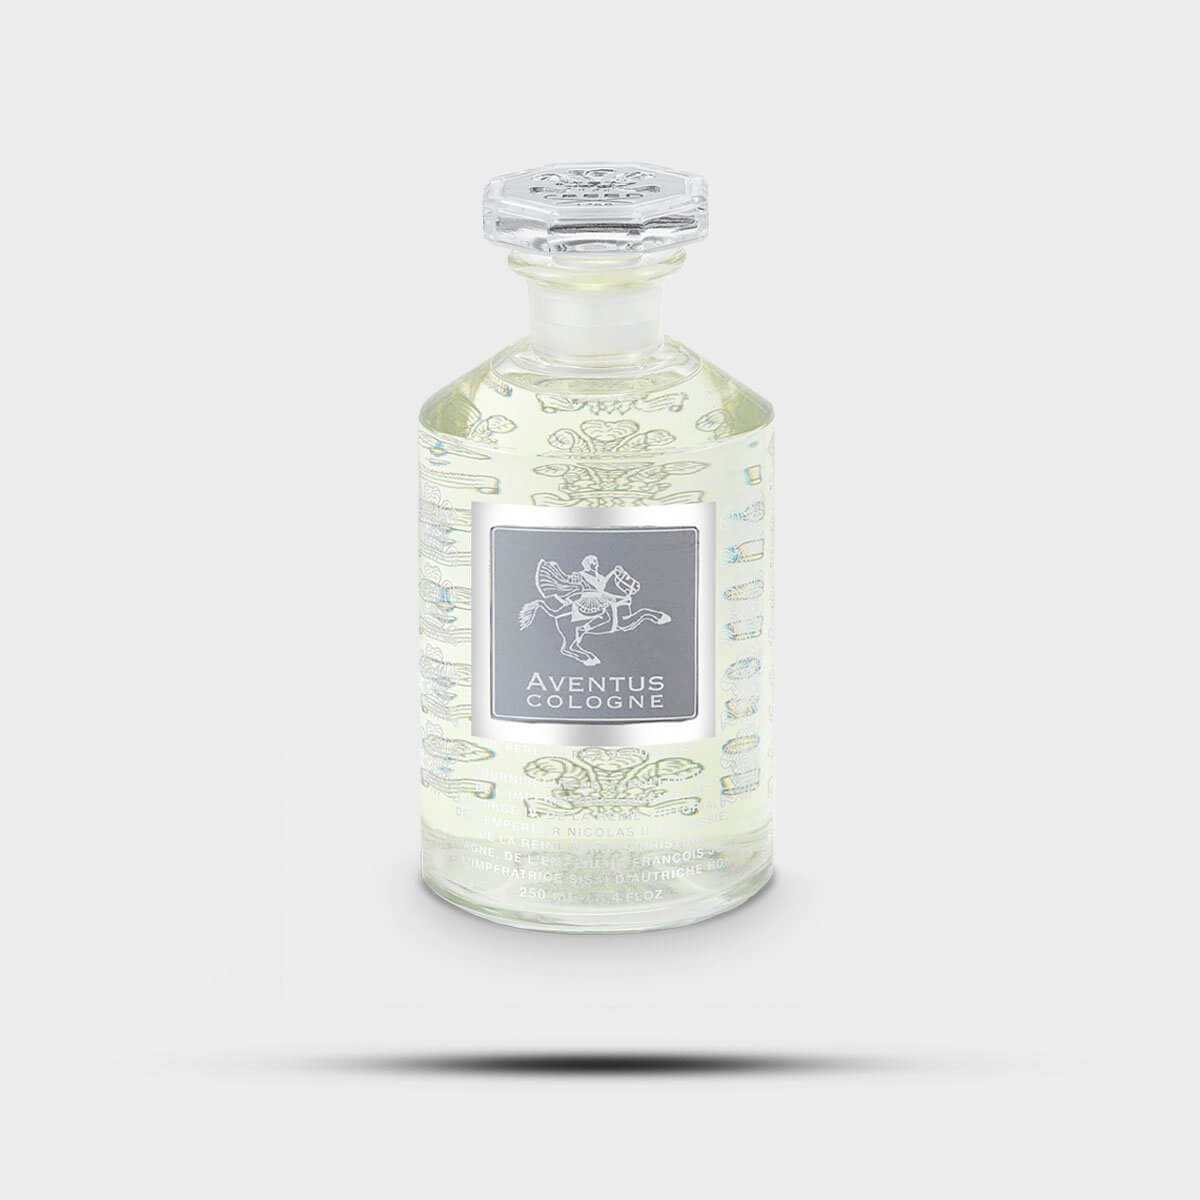 Aventus Cologne Perfume by Creed 100ml - La Maison Du Parfum